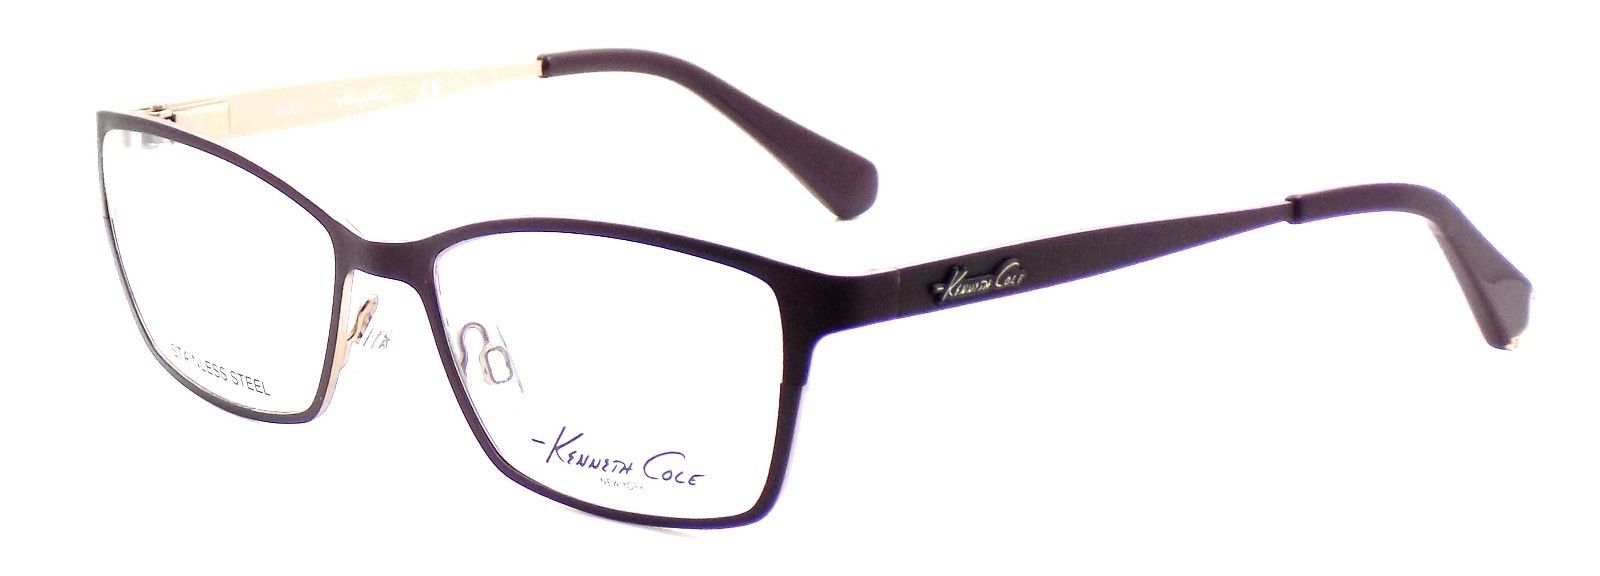 1-Kenneth Cole NY KC0206 083 Women's Eyeglasses 53-16-135 Matte Violet + CASE-664689610150-IKSpecs